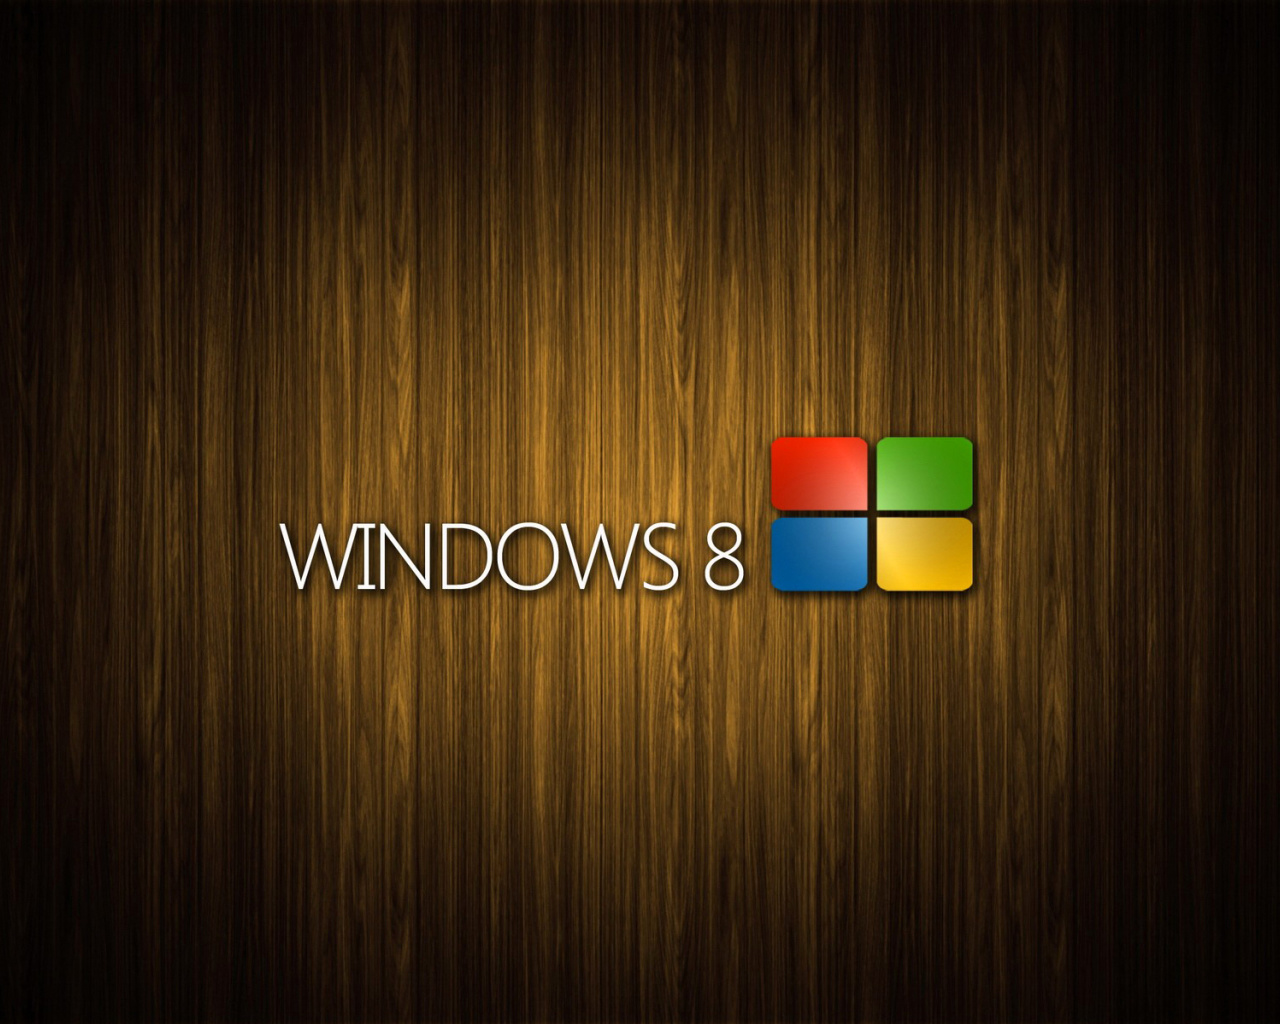 Windows 8 Wooden Emblem screenshot #1 1280x1024